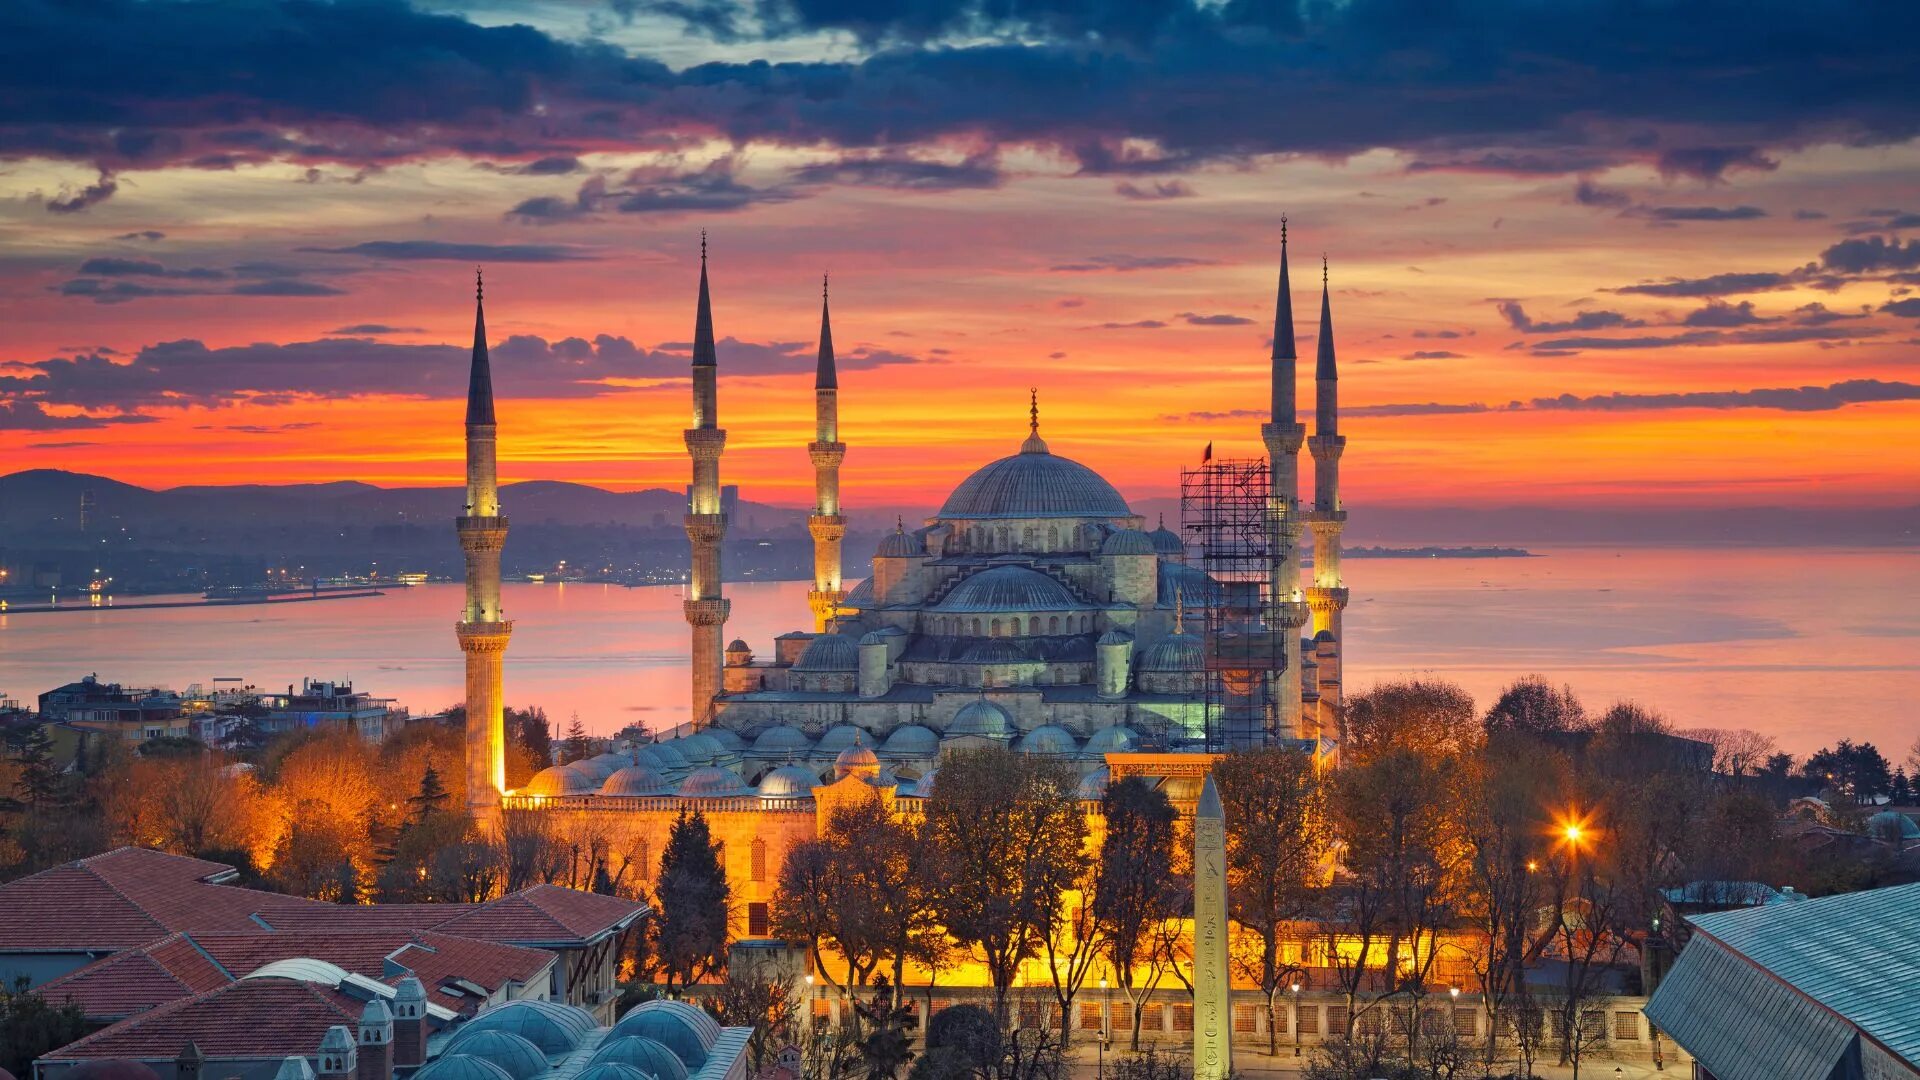 Стамбул старый город султанахмет. Достопримечательности Стамбула 2022. Стамбул. Голубая мечеть. Босфор Турция Стамбул закат.